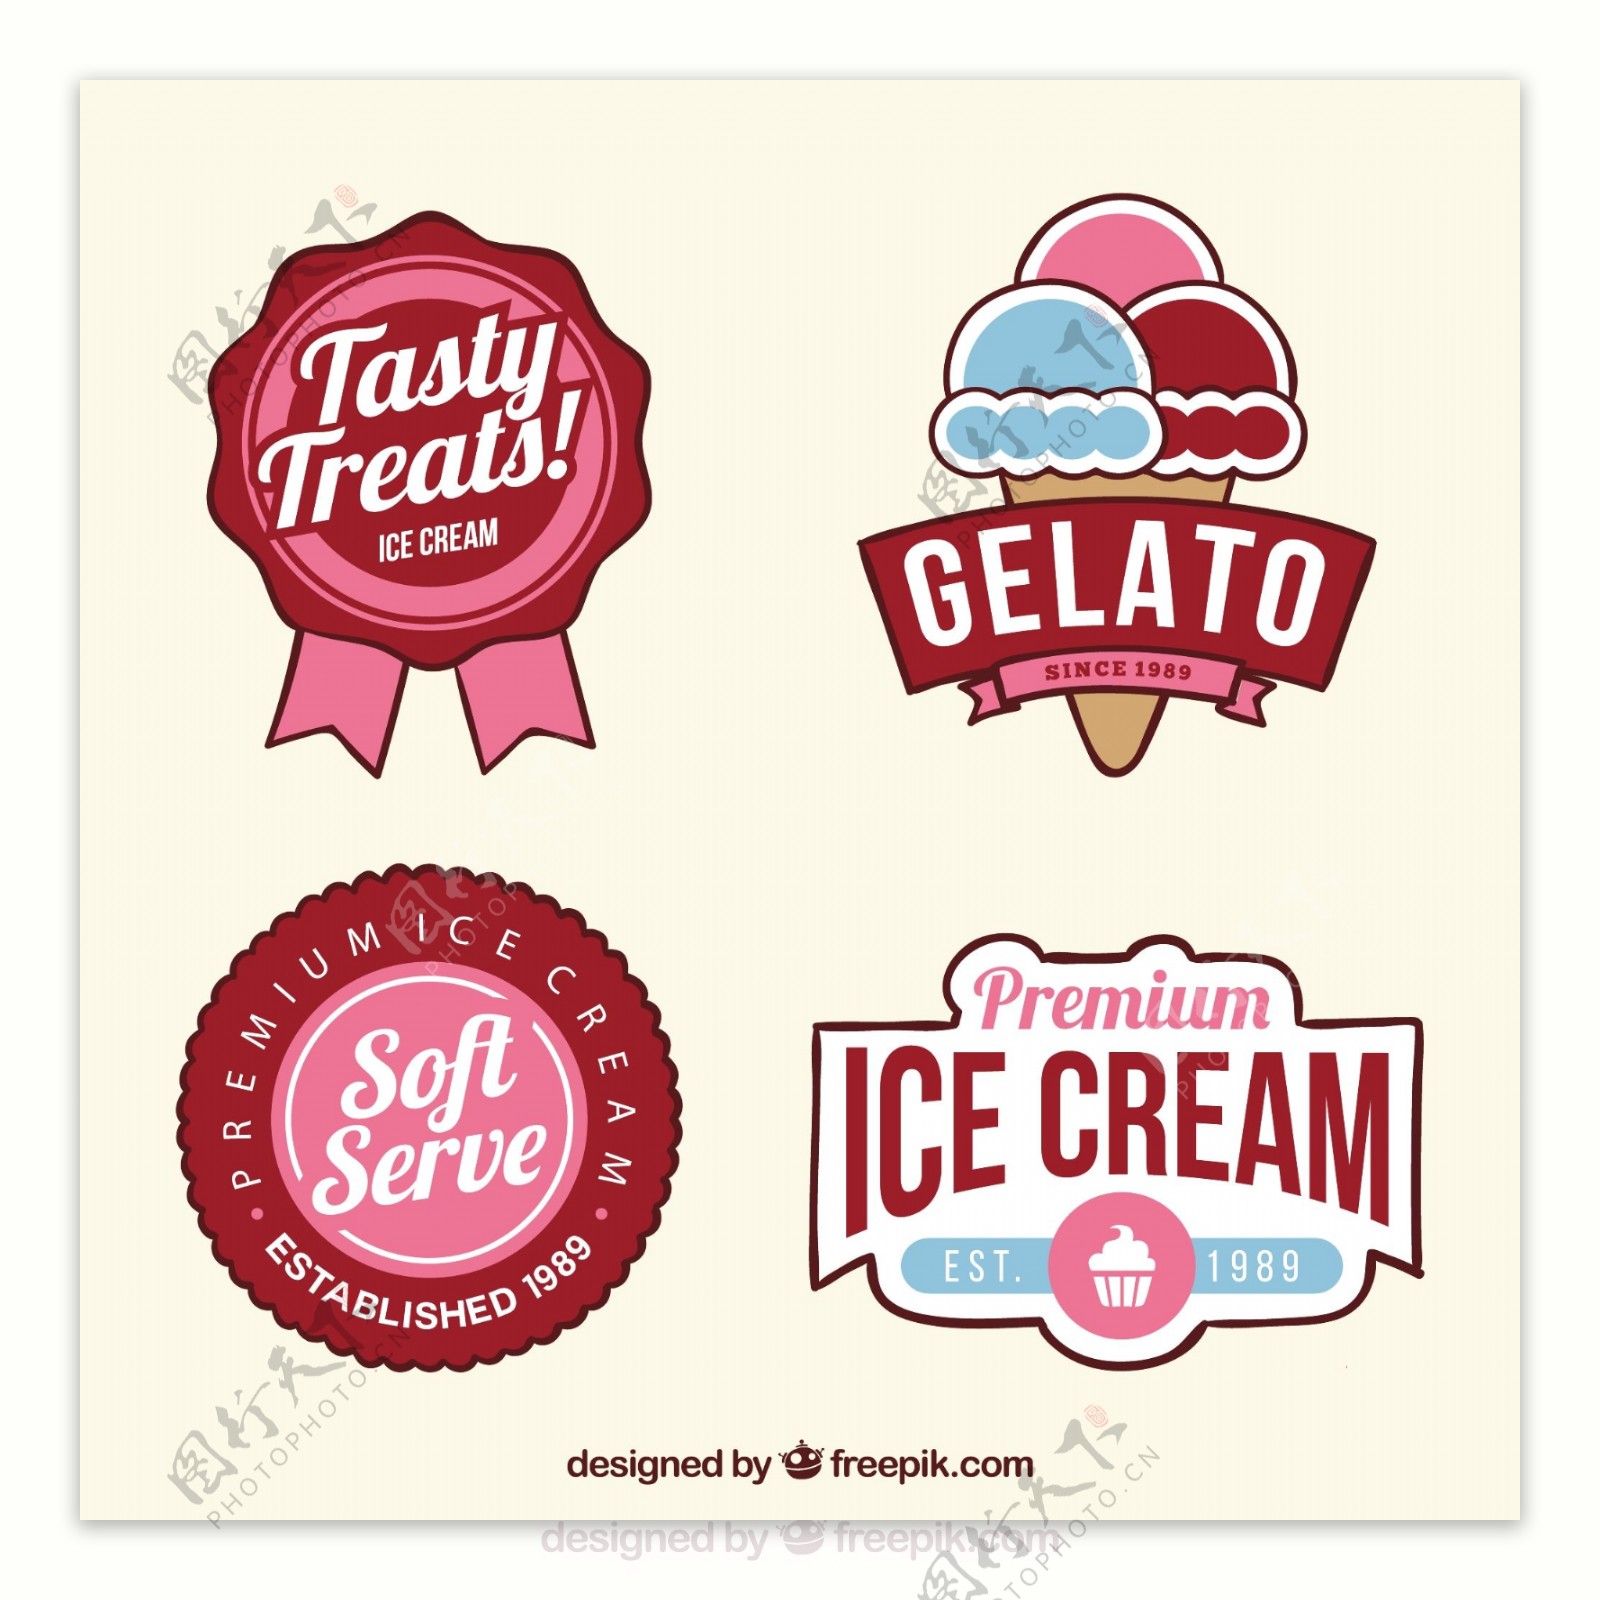 彩色冰淇淋徽章图标平面设计模板